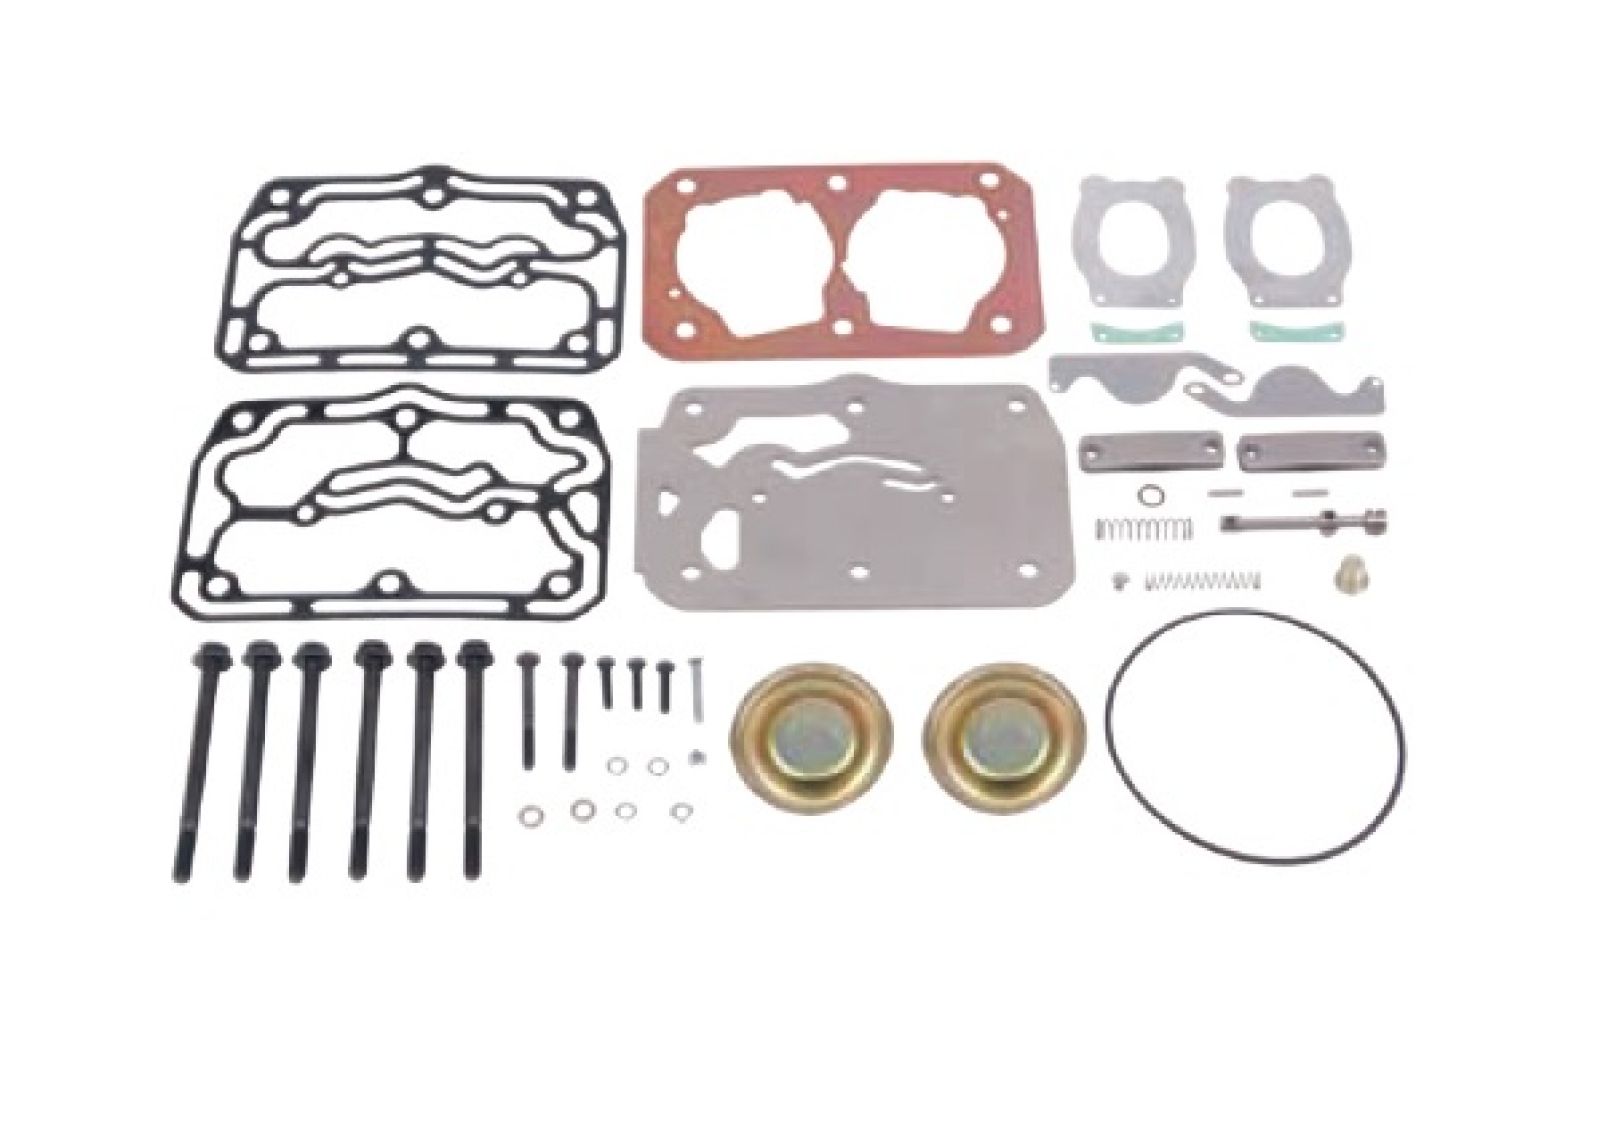 Air Compressor Repair Kit for Daf, 5010859253